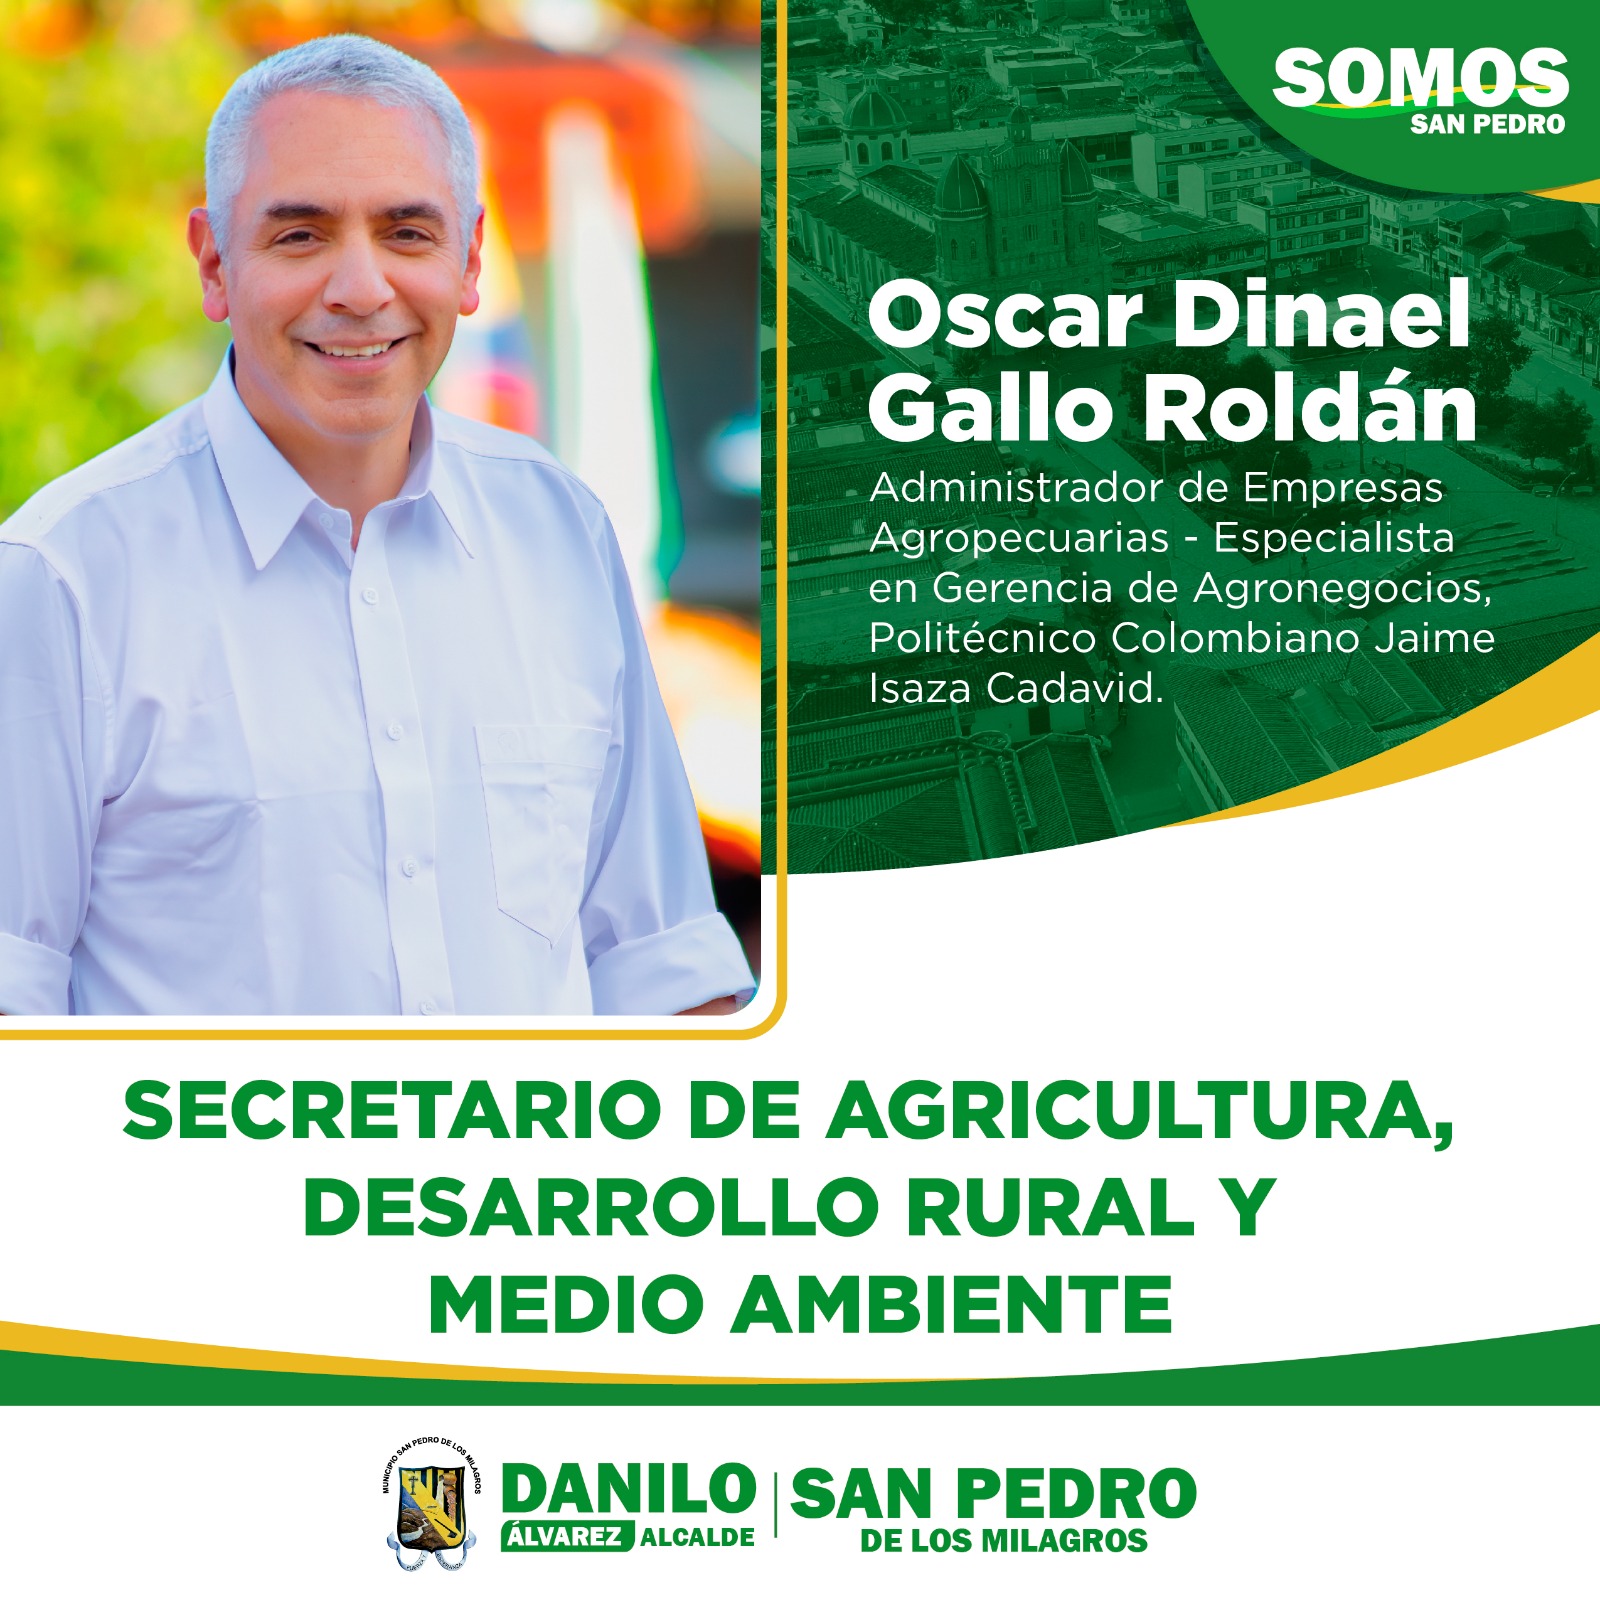 SECRETARIO DE AGRICULTURA, DESARROLLO RURAL Y MEDIO AMBIENTE